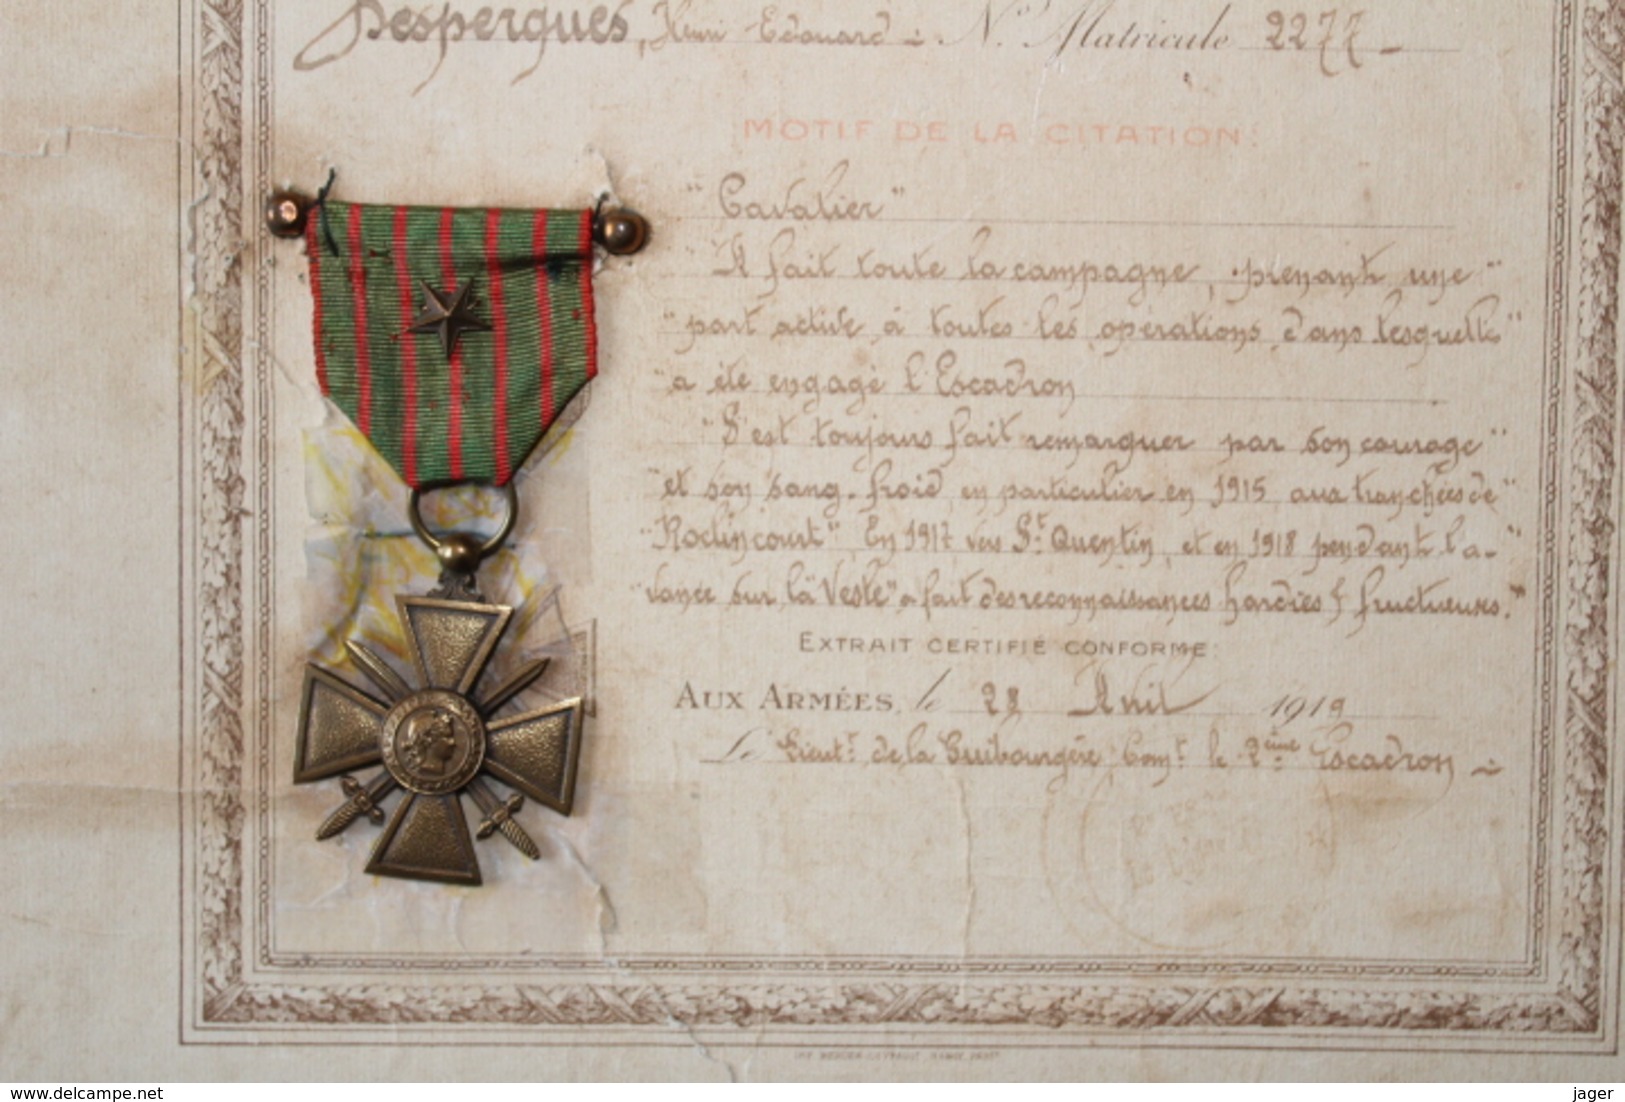 Citation Pour Un Hussard (13 Eme Regiment) Avec Sa Croix De Guerre ,' 1914 1918 - 1914-18